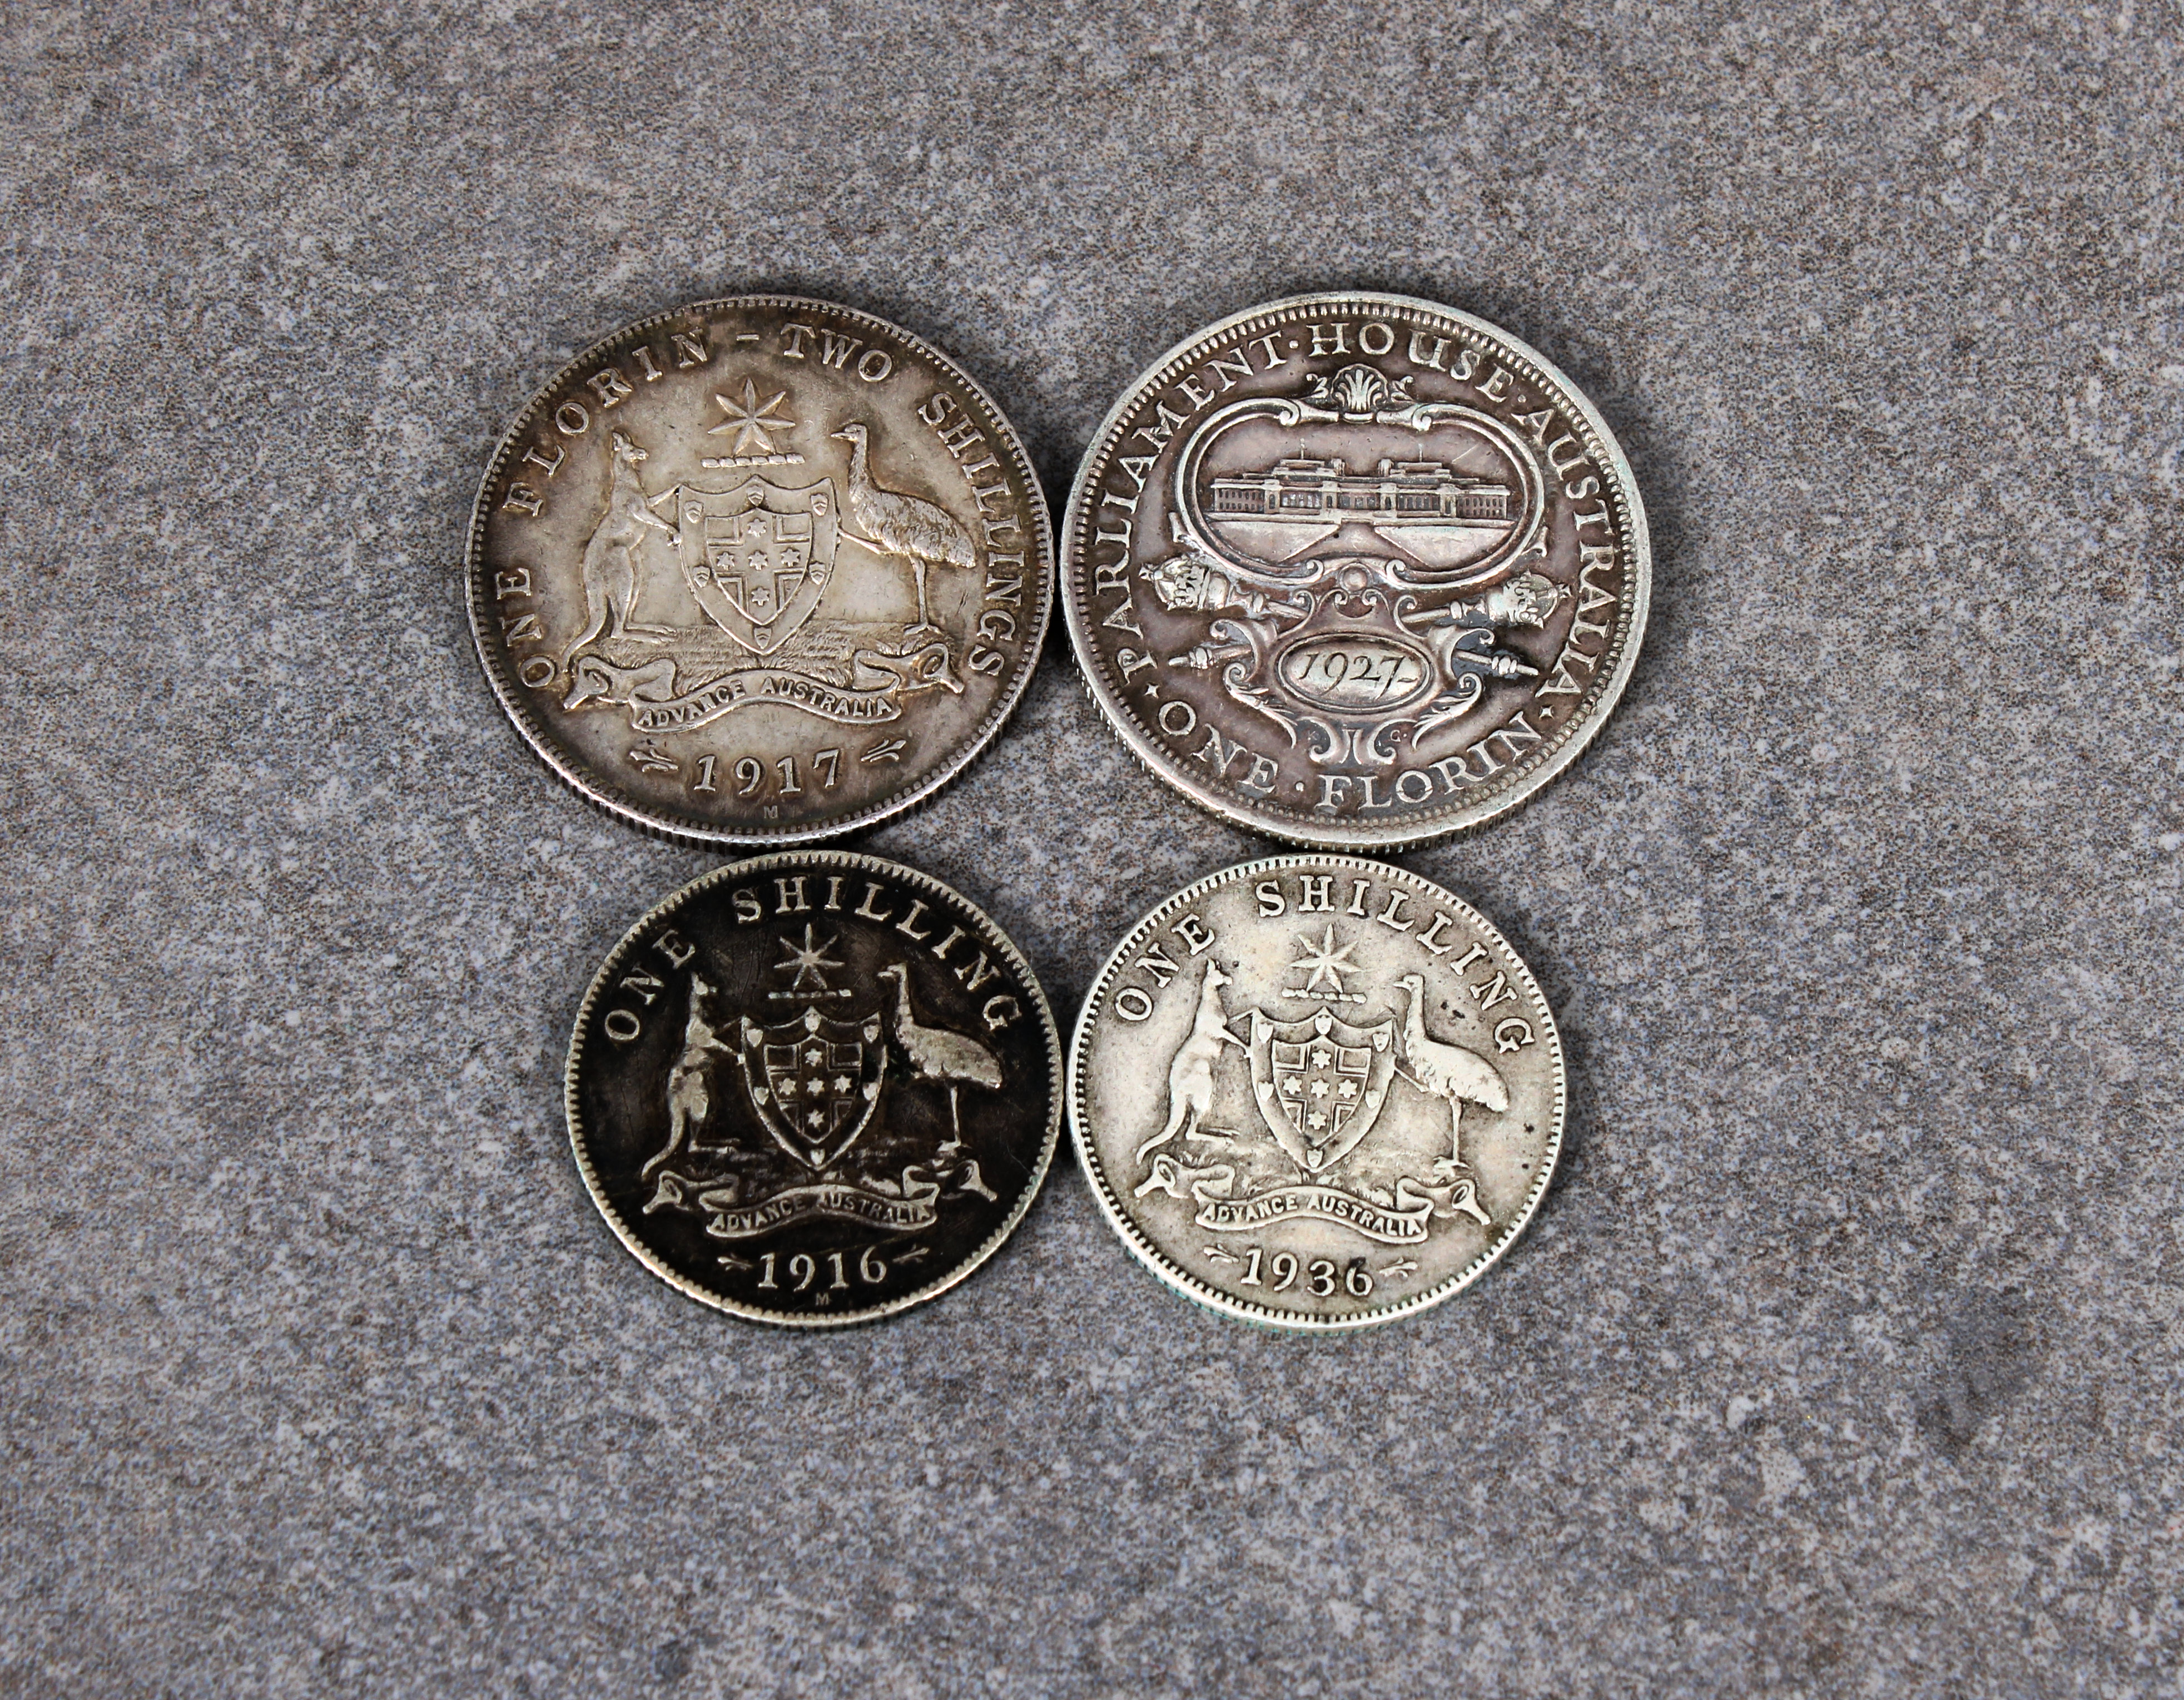 Four Australian silver coins